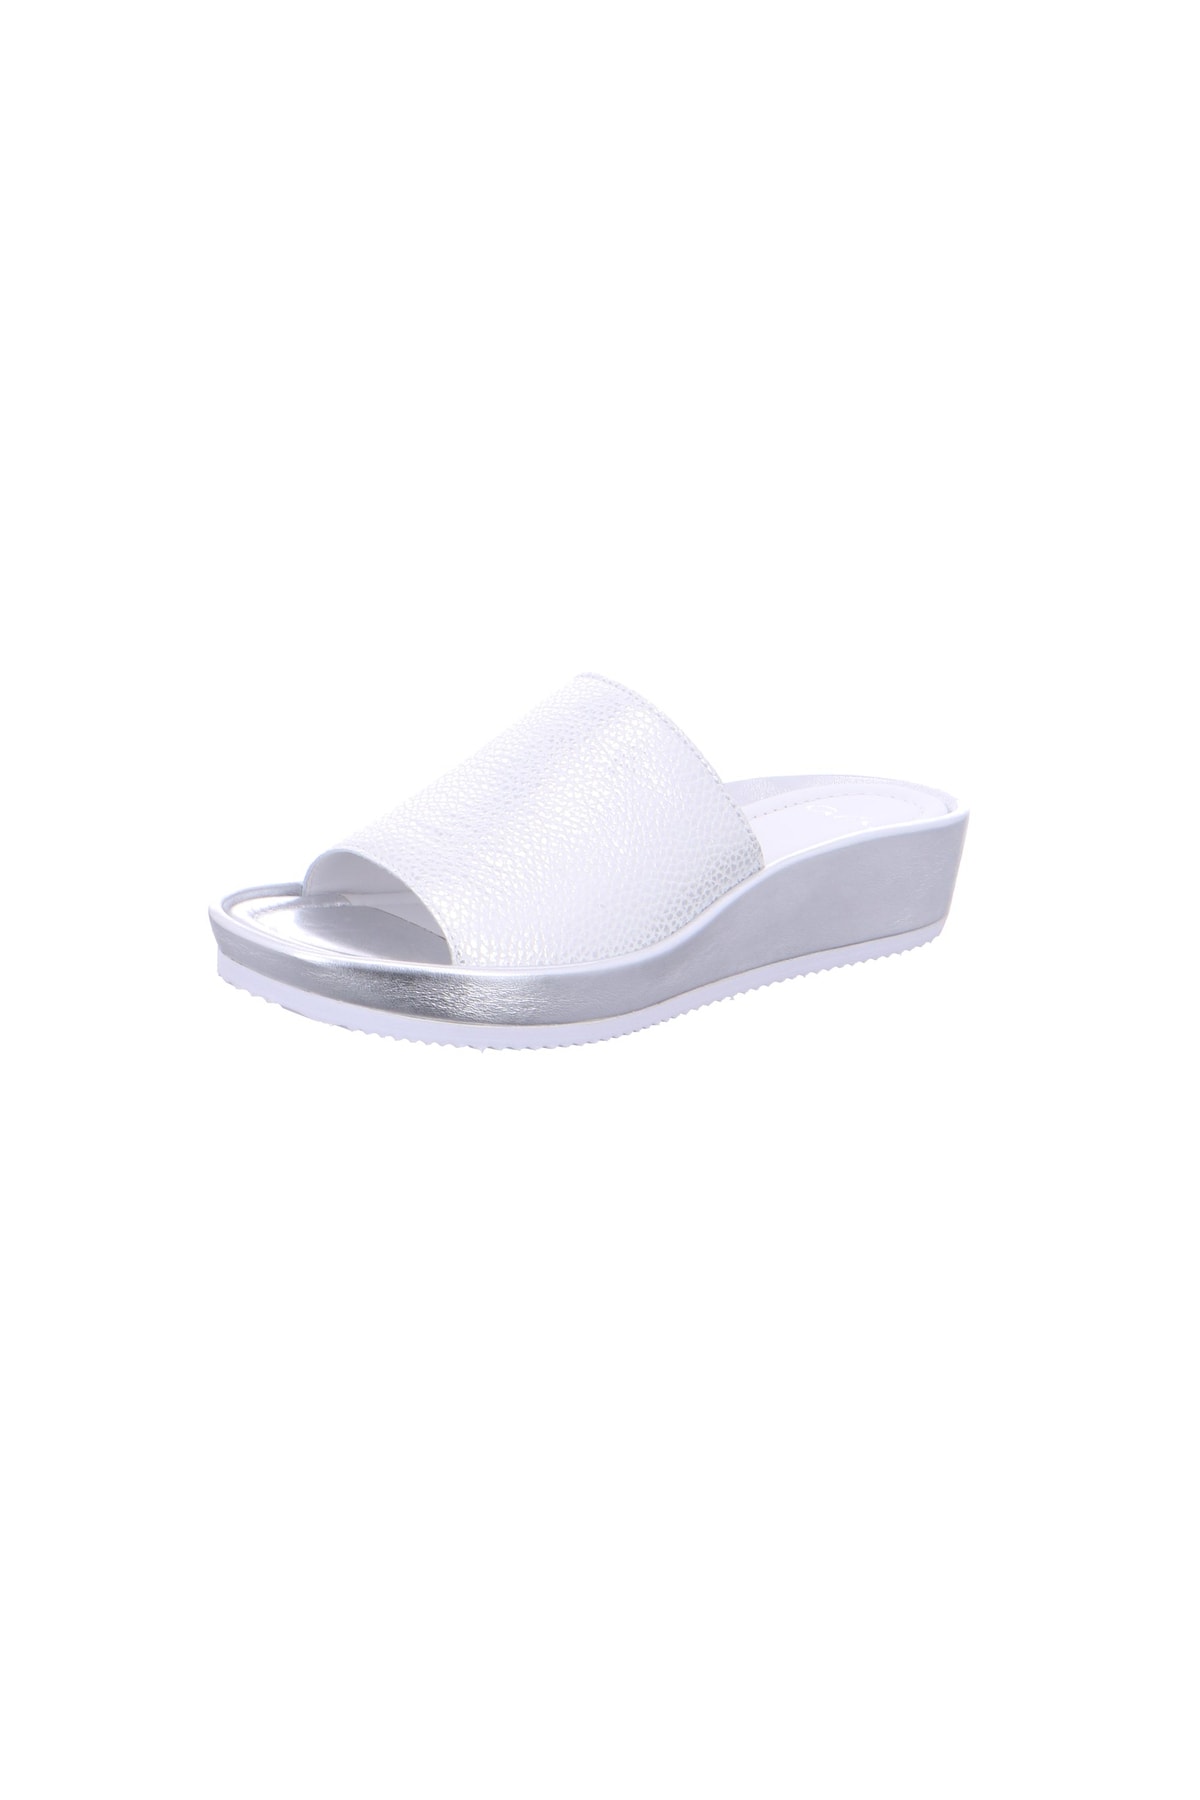 ARA Sandalette Weiß Flacher Absatz Fast ausverkauft